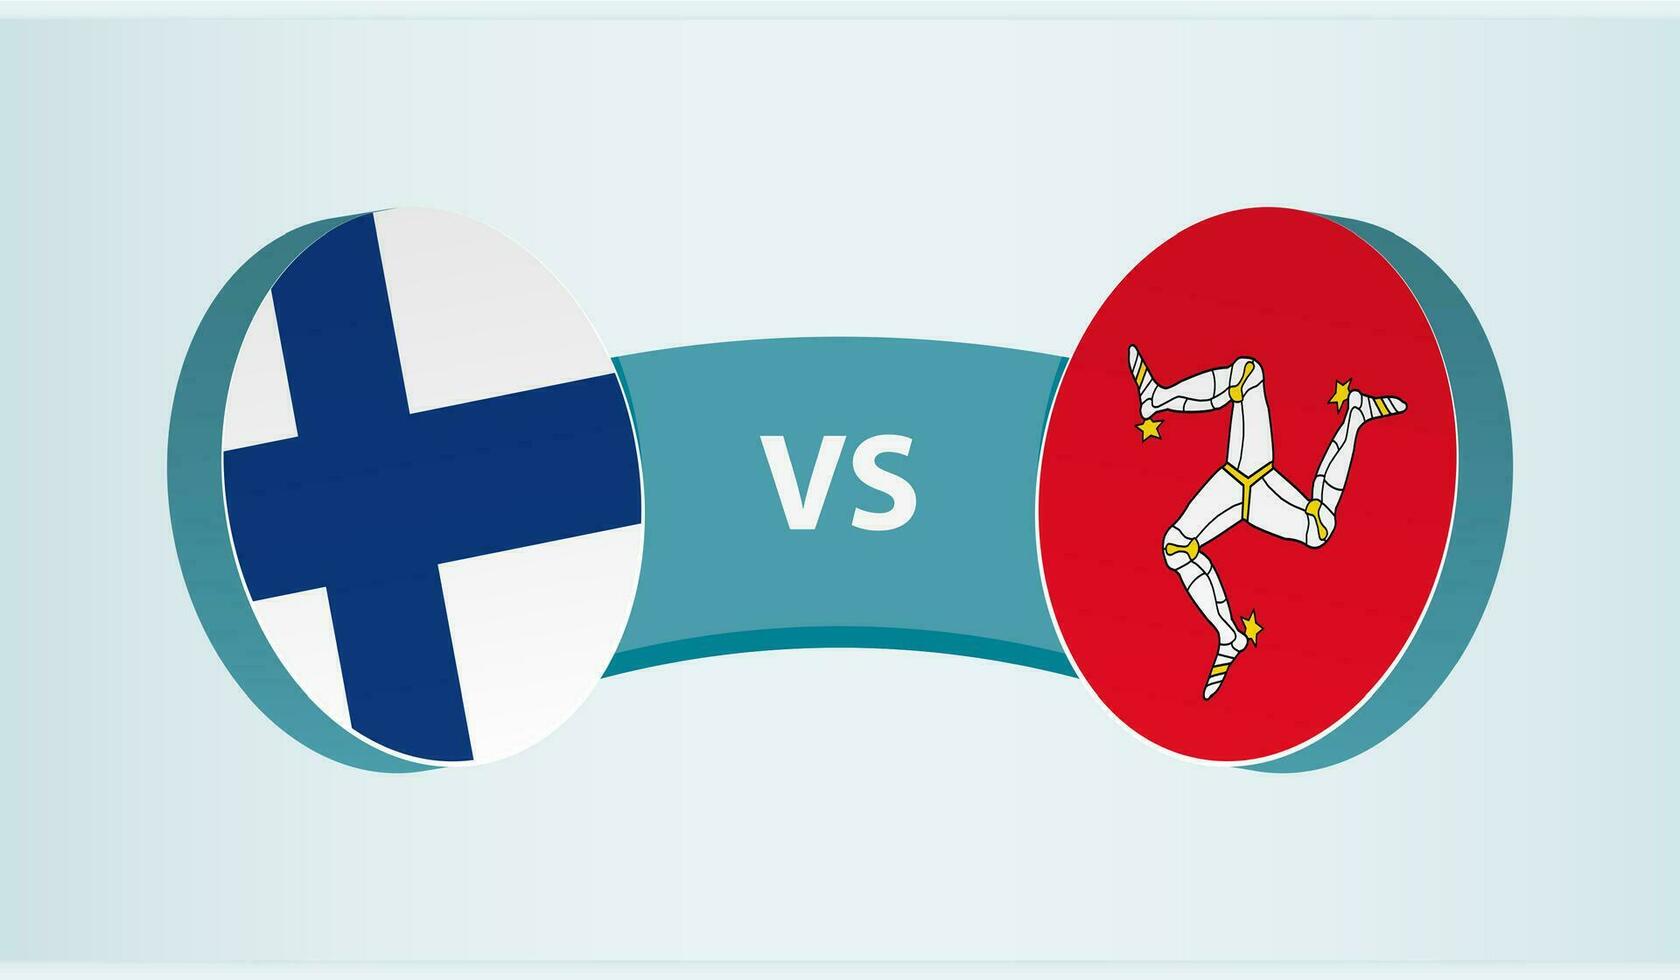 Finland versus eiland van Mens, team sport- wedstrijd concept. vector